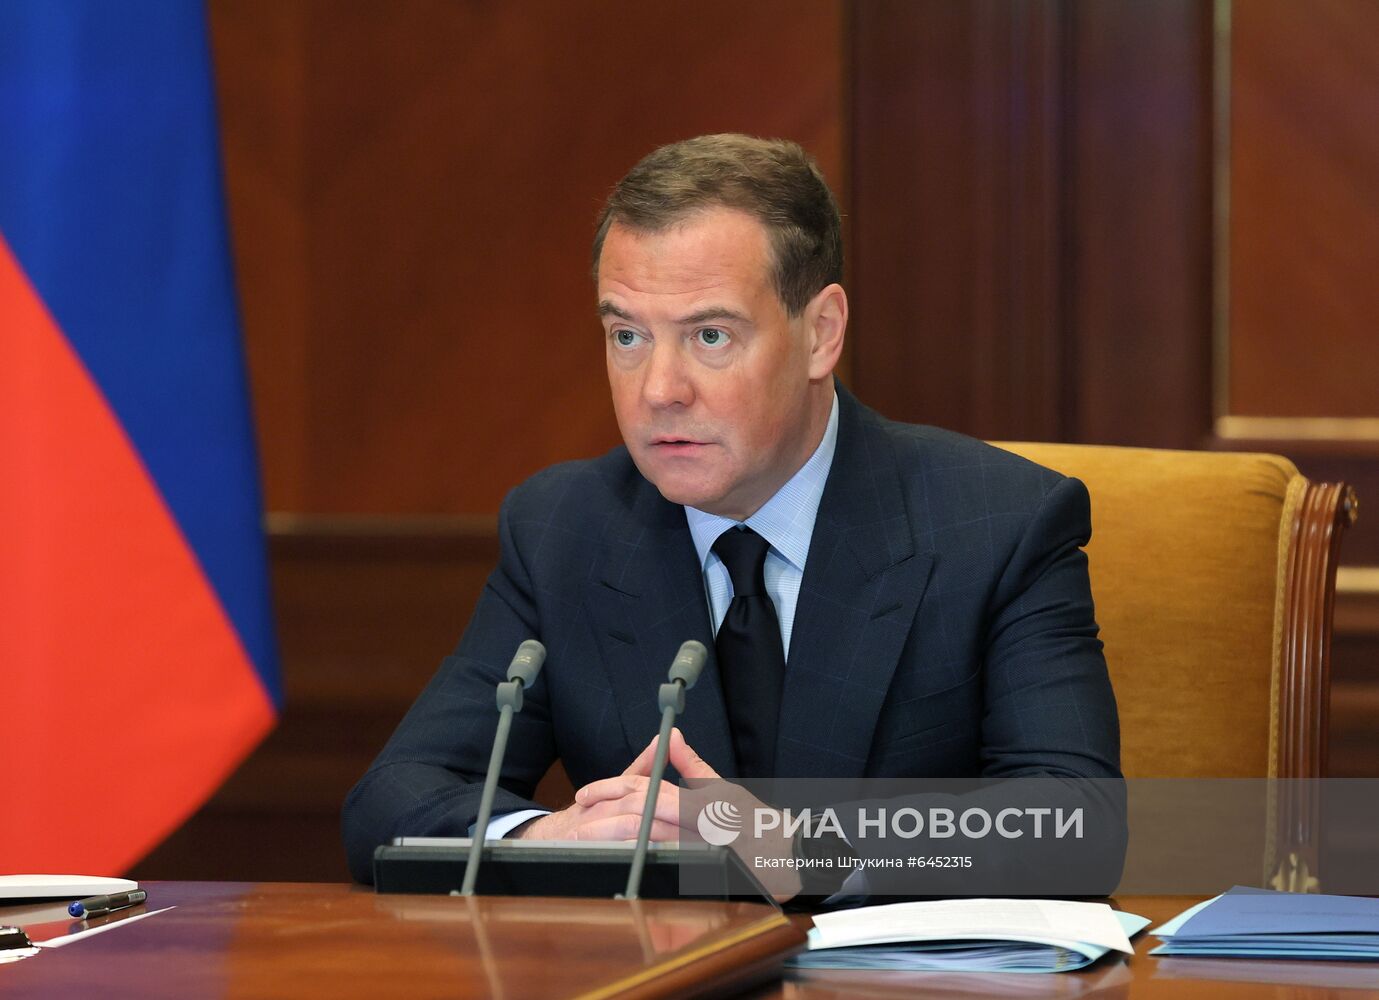 Зампред Совбеза РФ Д. Медведев провел совещание о производстве и внедрении новых вакцин от коронавируса